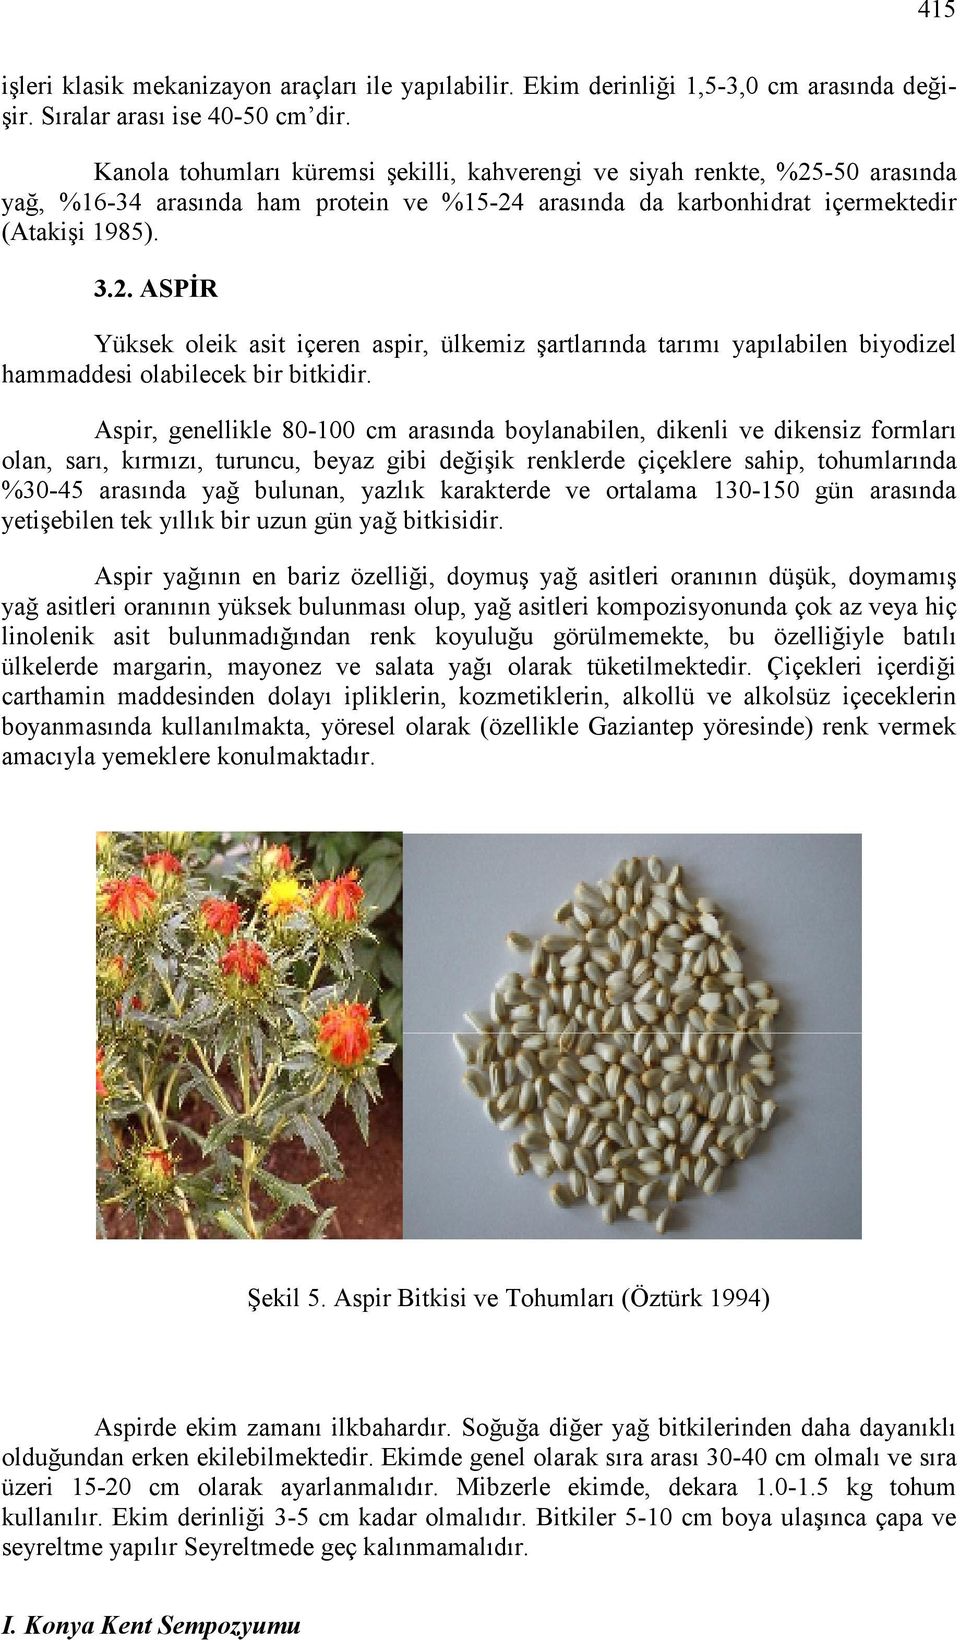 Aspir, genellikle 80-100 cm arasında boylanabilen, dikenli ve dikensiz formları olan, sarı, kırmızı, turuncu, beyaz gibi değişik renklerde çiçeklere sahip, tohumlarında %30-45 arasında yağ bulunan,